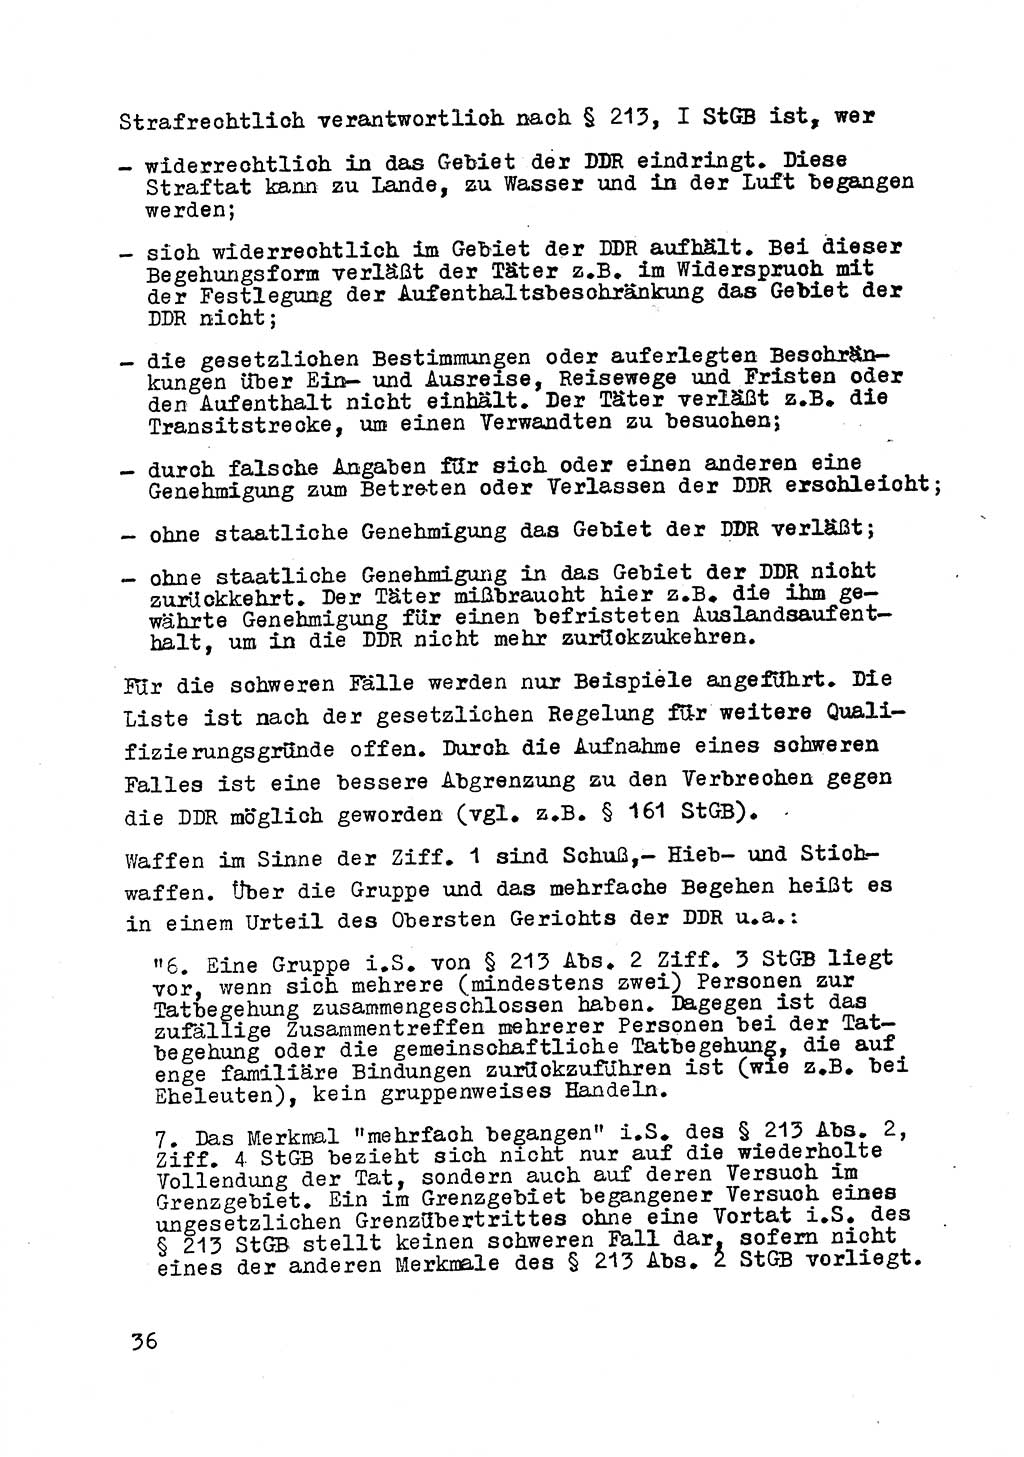 Strafrecht der DDR (Deutsche Demokratische Republik), Besonderer Teil, Lehrmaterial, Heft 8 1970, Seite 36 (Strafr. DDR BT Lehrmat. H. 8 1970, S. 36)